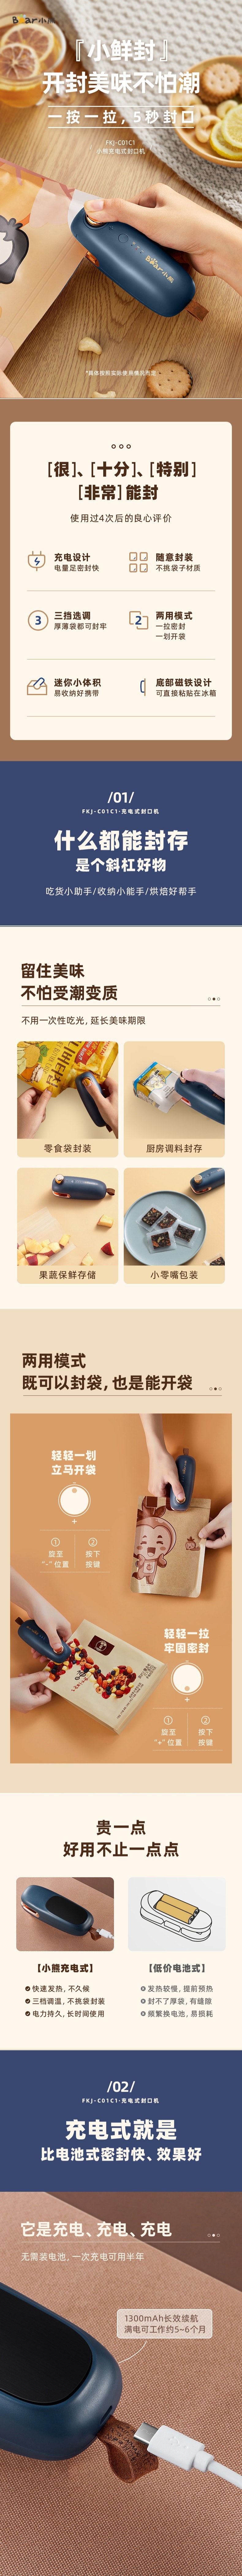 【中国直邮】Bear小熊 封口机 迷你便携家用小型封口器 零食袋封装分装 调料封口 USB充电